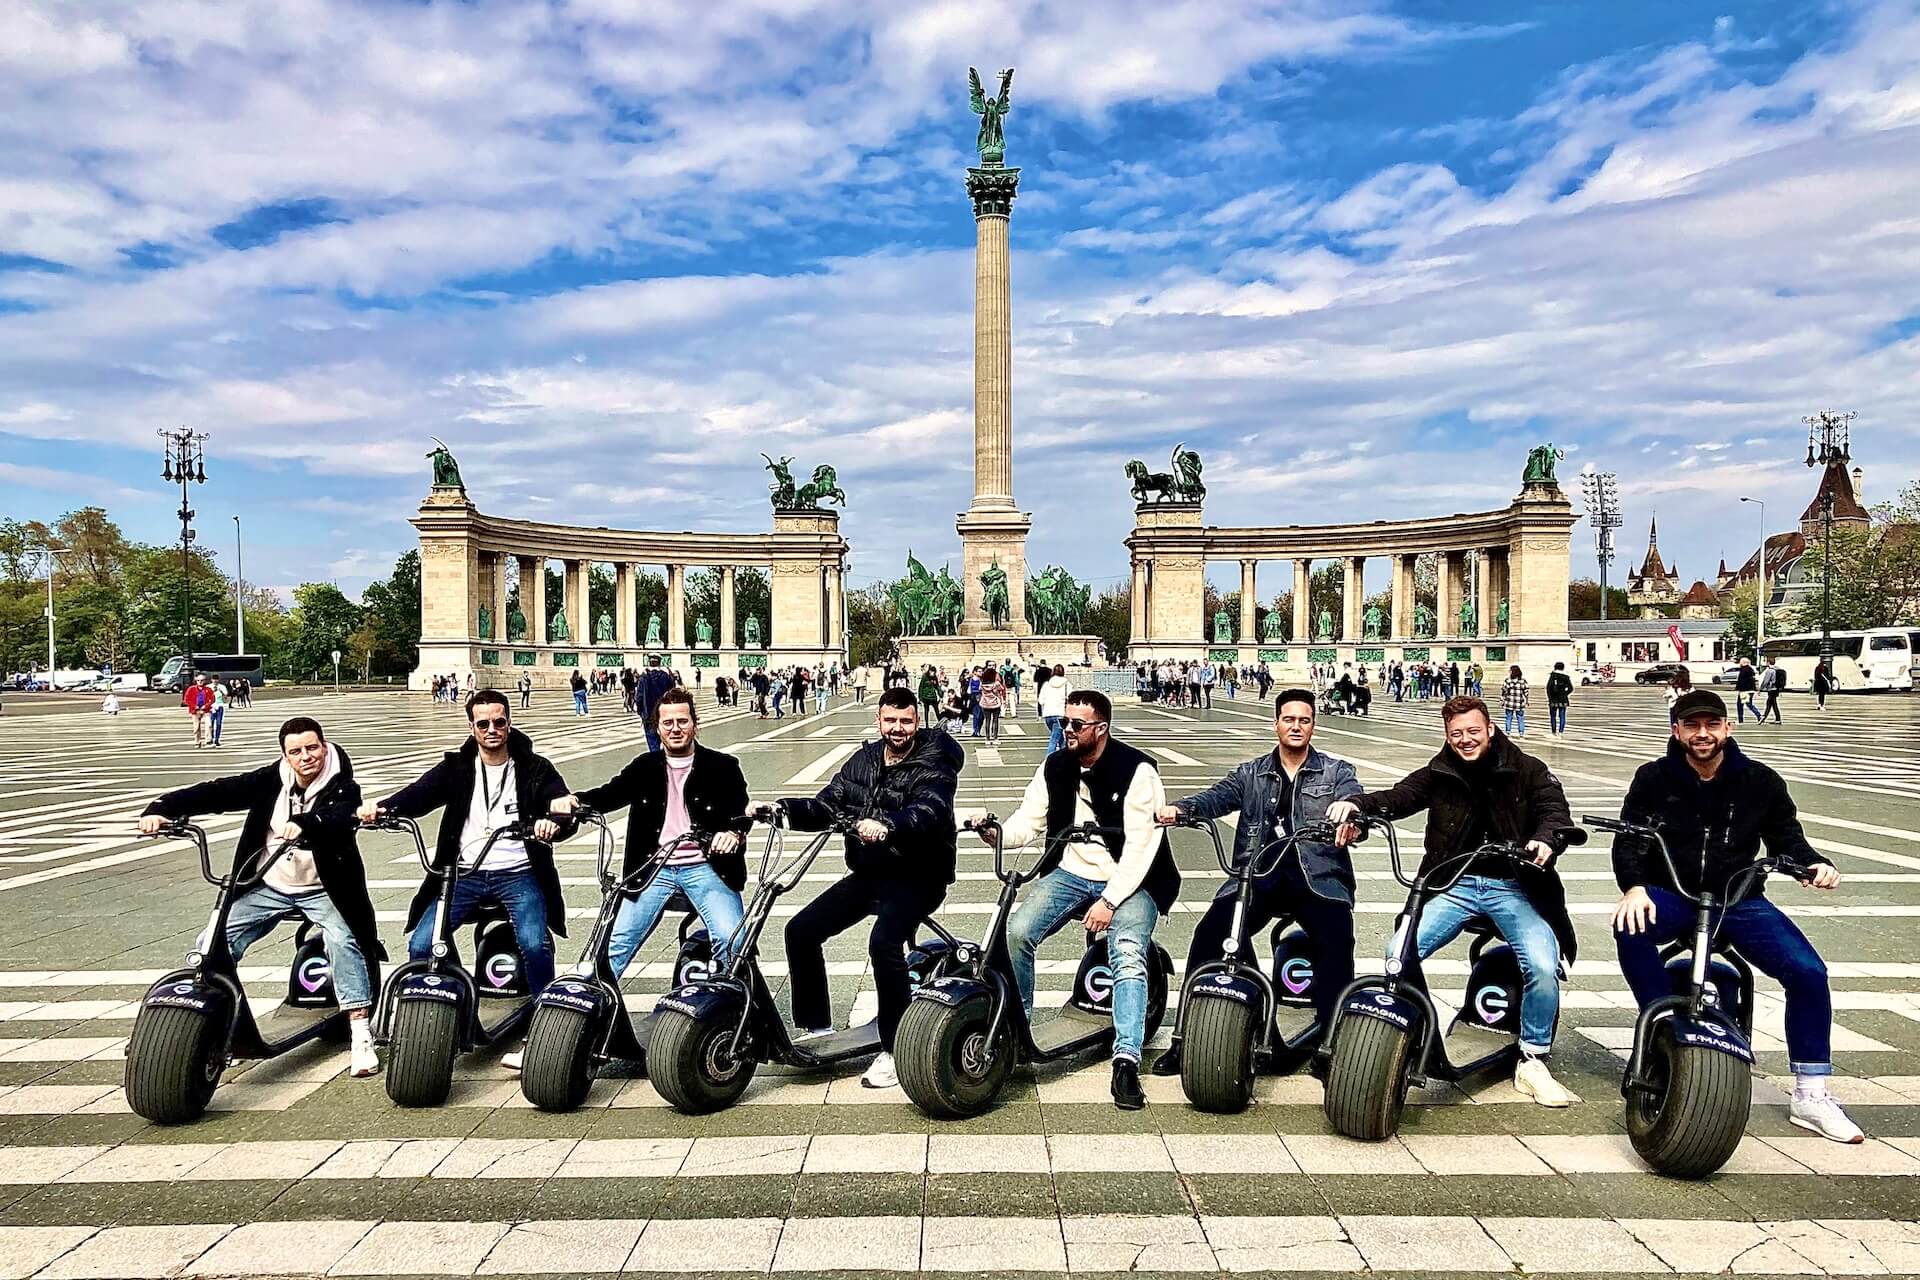 Des personnes posant sur des scooters électriques devant le monument de la place des Héros.